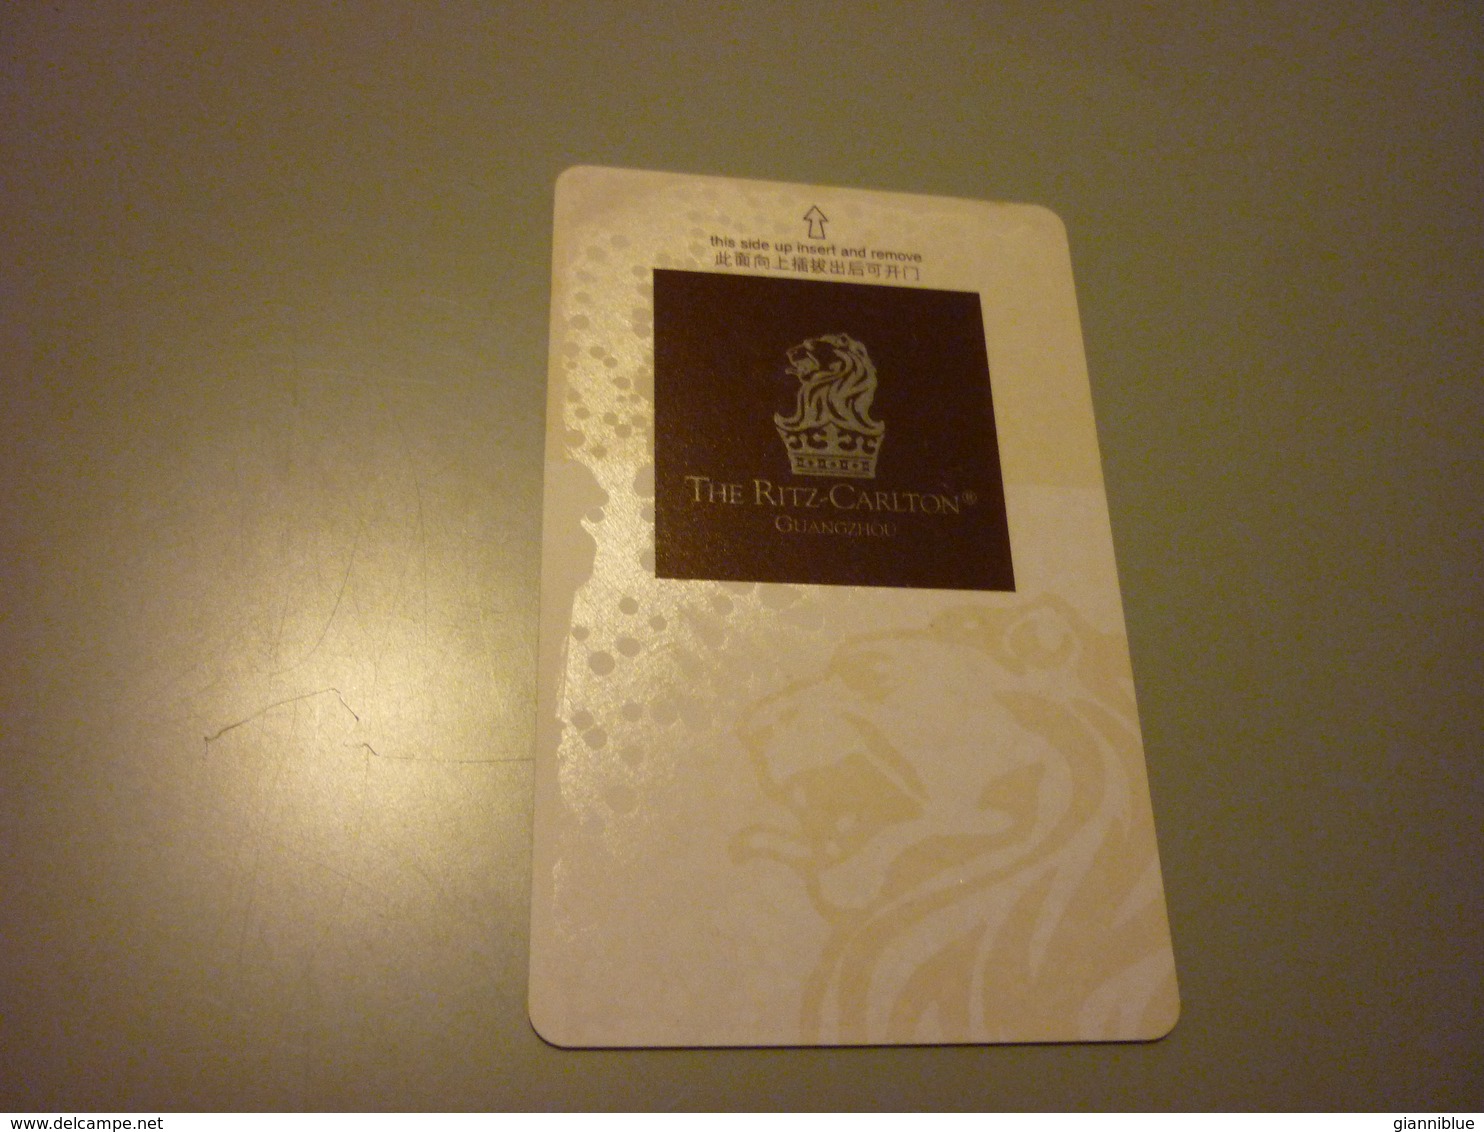 China Guangzhou The Ritz-Carlton Hotel Room Key Card - Cartes D'hotel